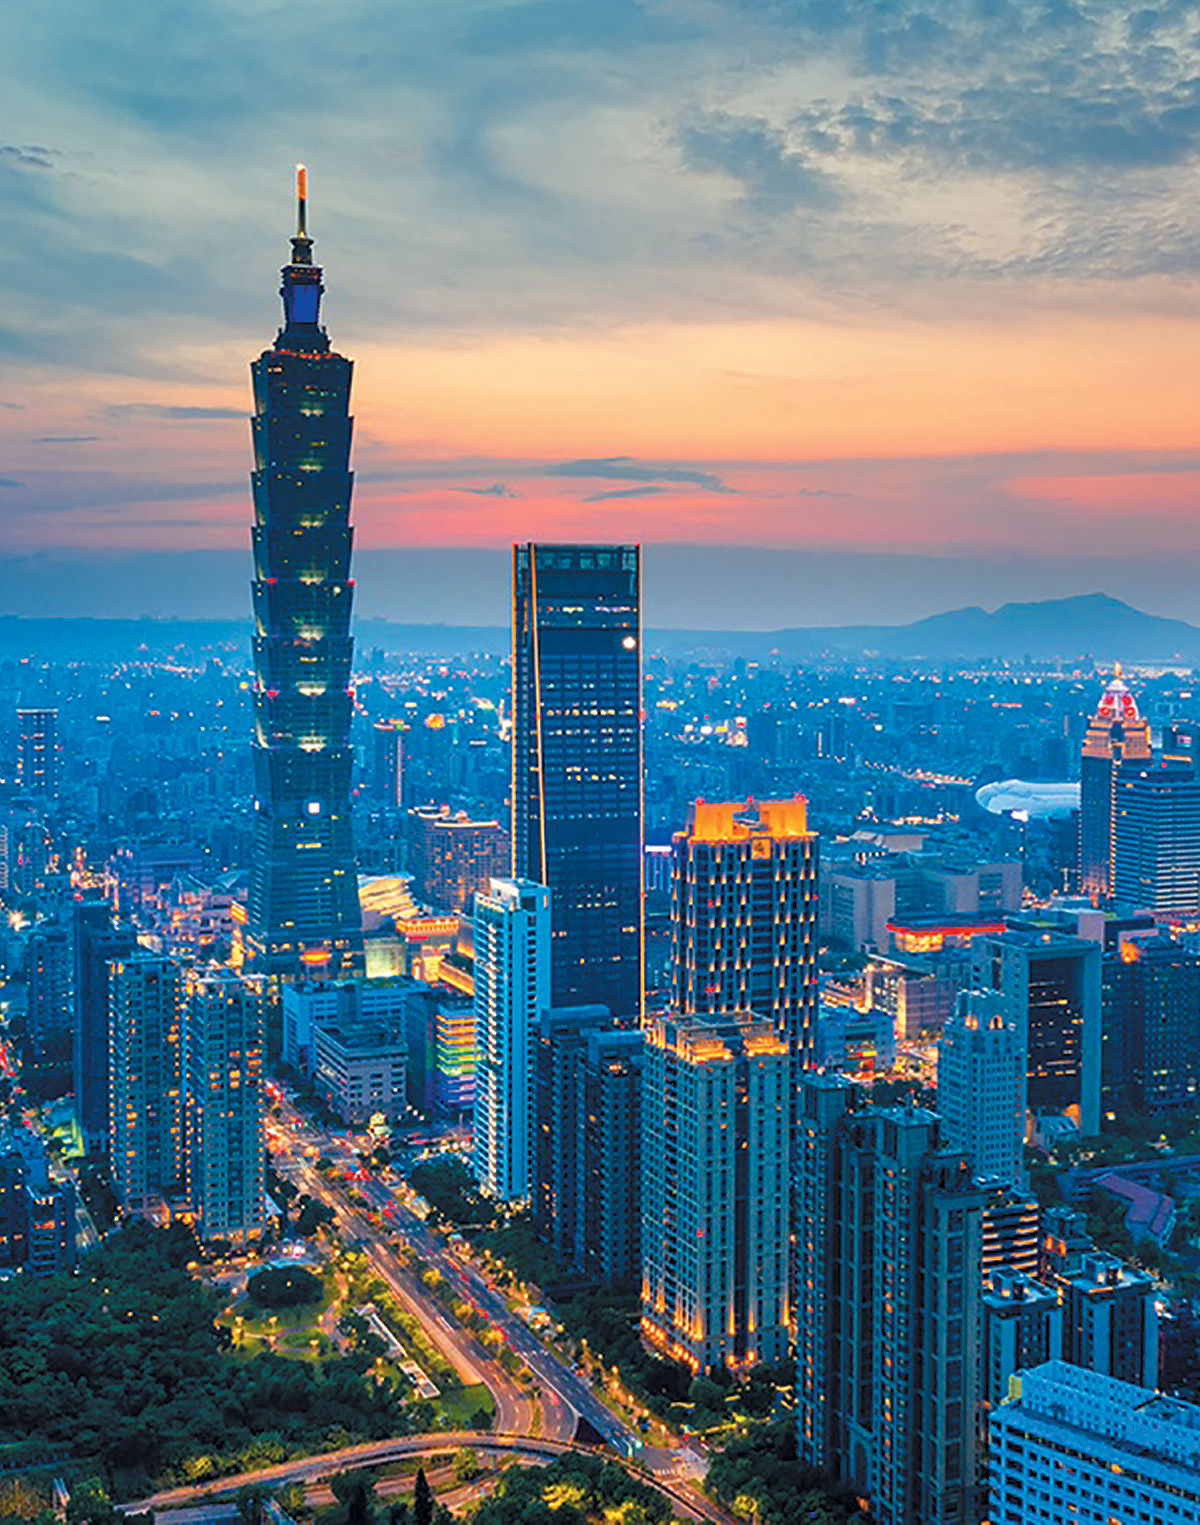 عملکرد دفتر توسعه صنعتی تایوان